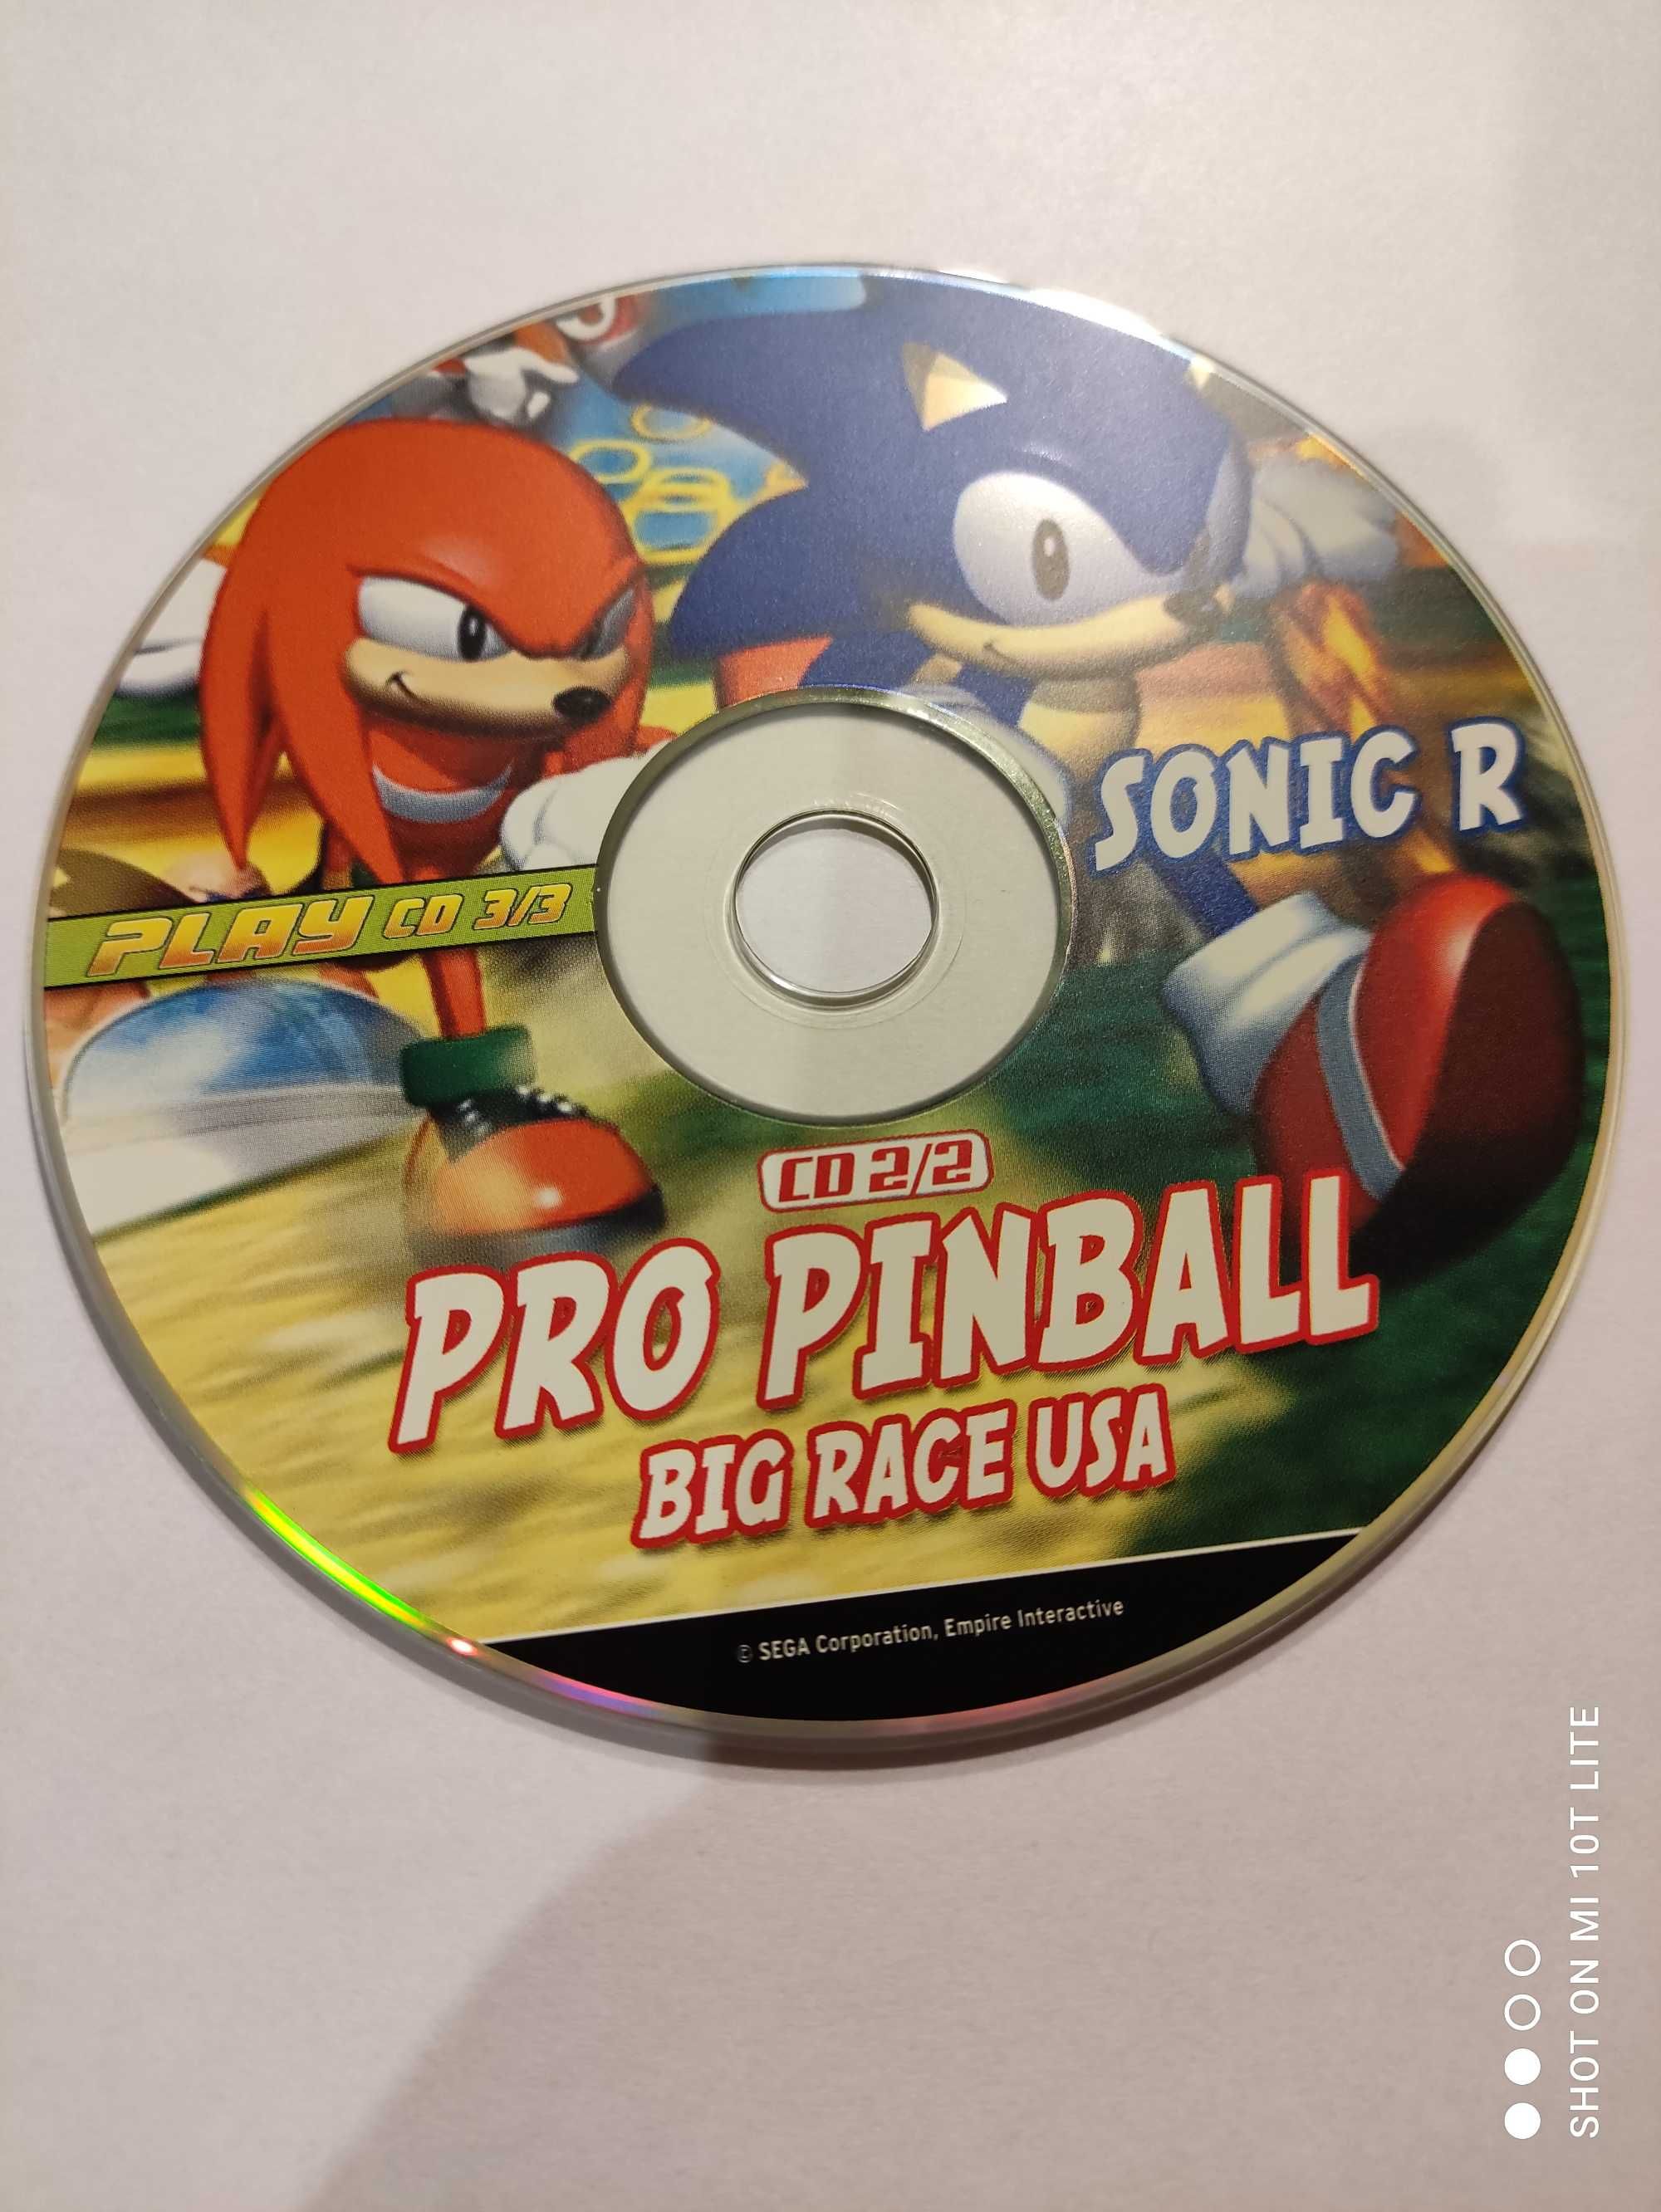 Gram komputerowa Pro Sonic R.